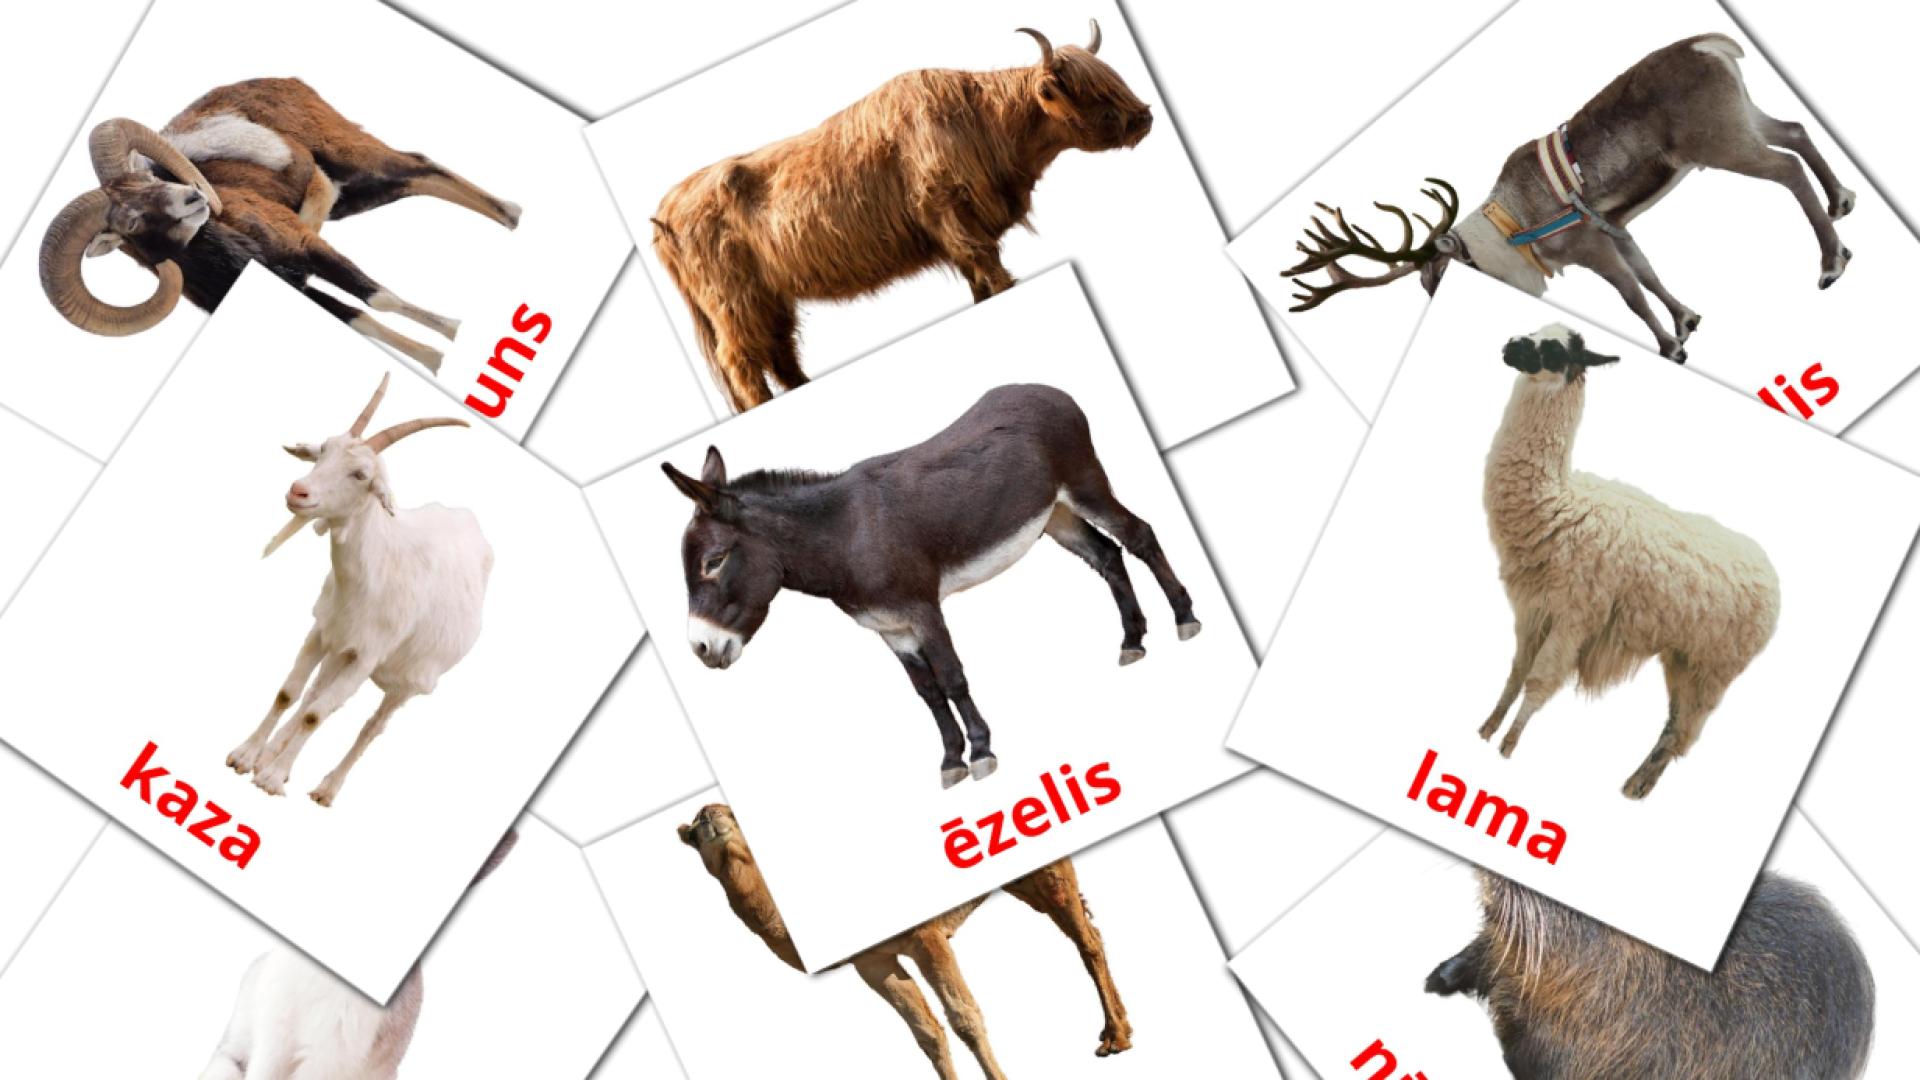 15 Lauksaimniecības dzīvnieki  flashcards